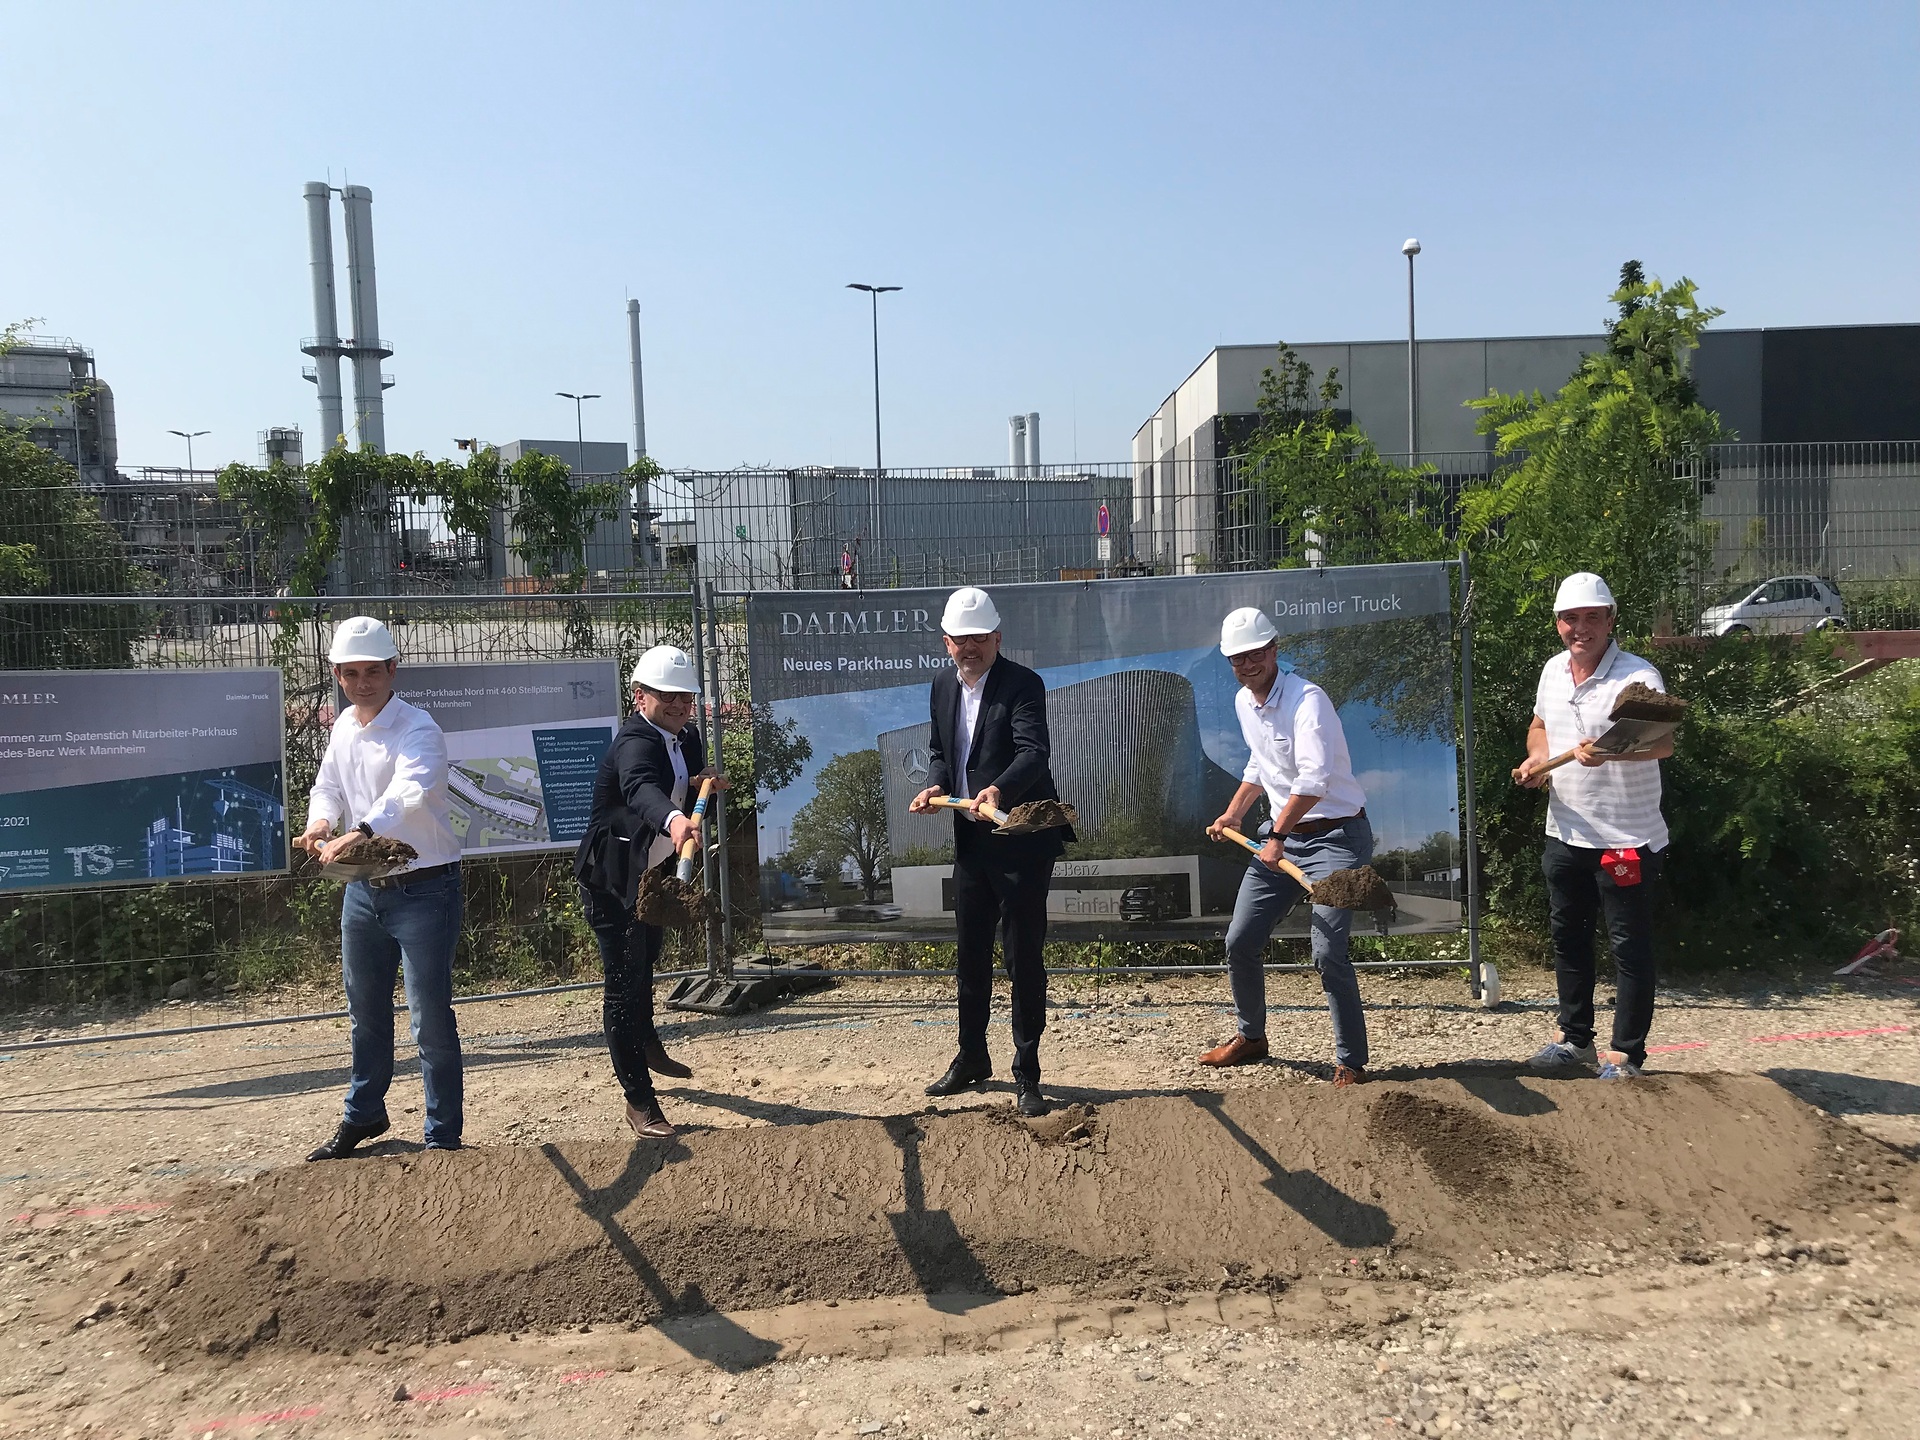 Spatenstich für 470 neue Parkplätze: Mercedes-Benz Werk Mannheim baut neues Parkhaus für Mitarbeiter